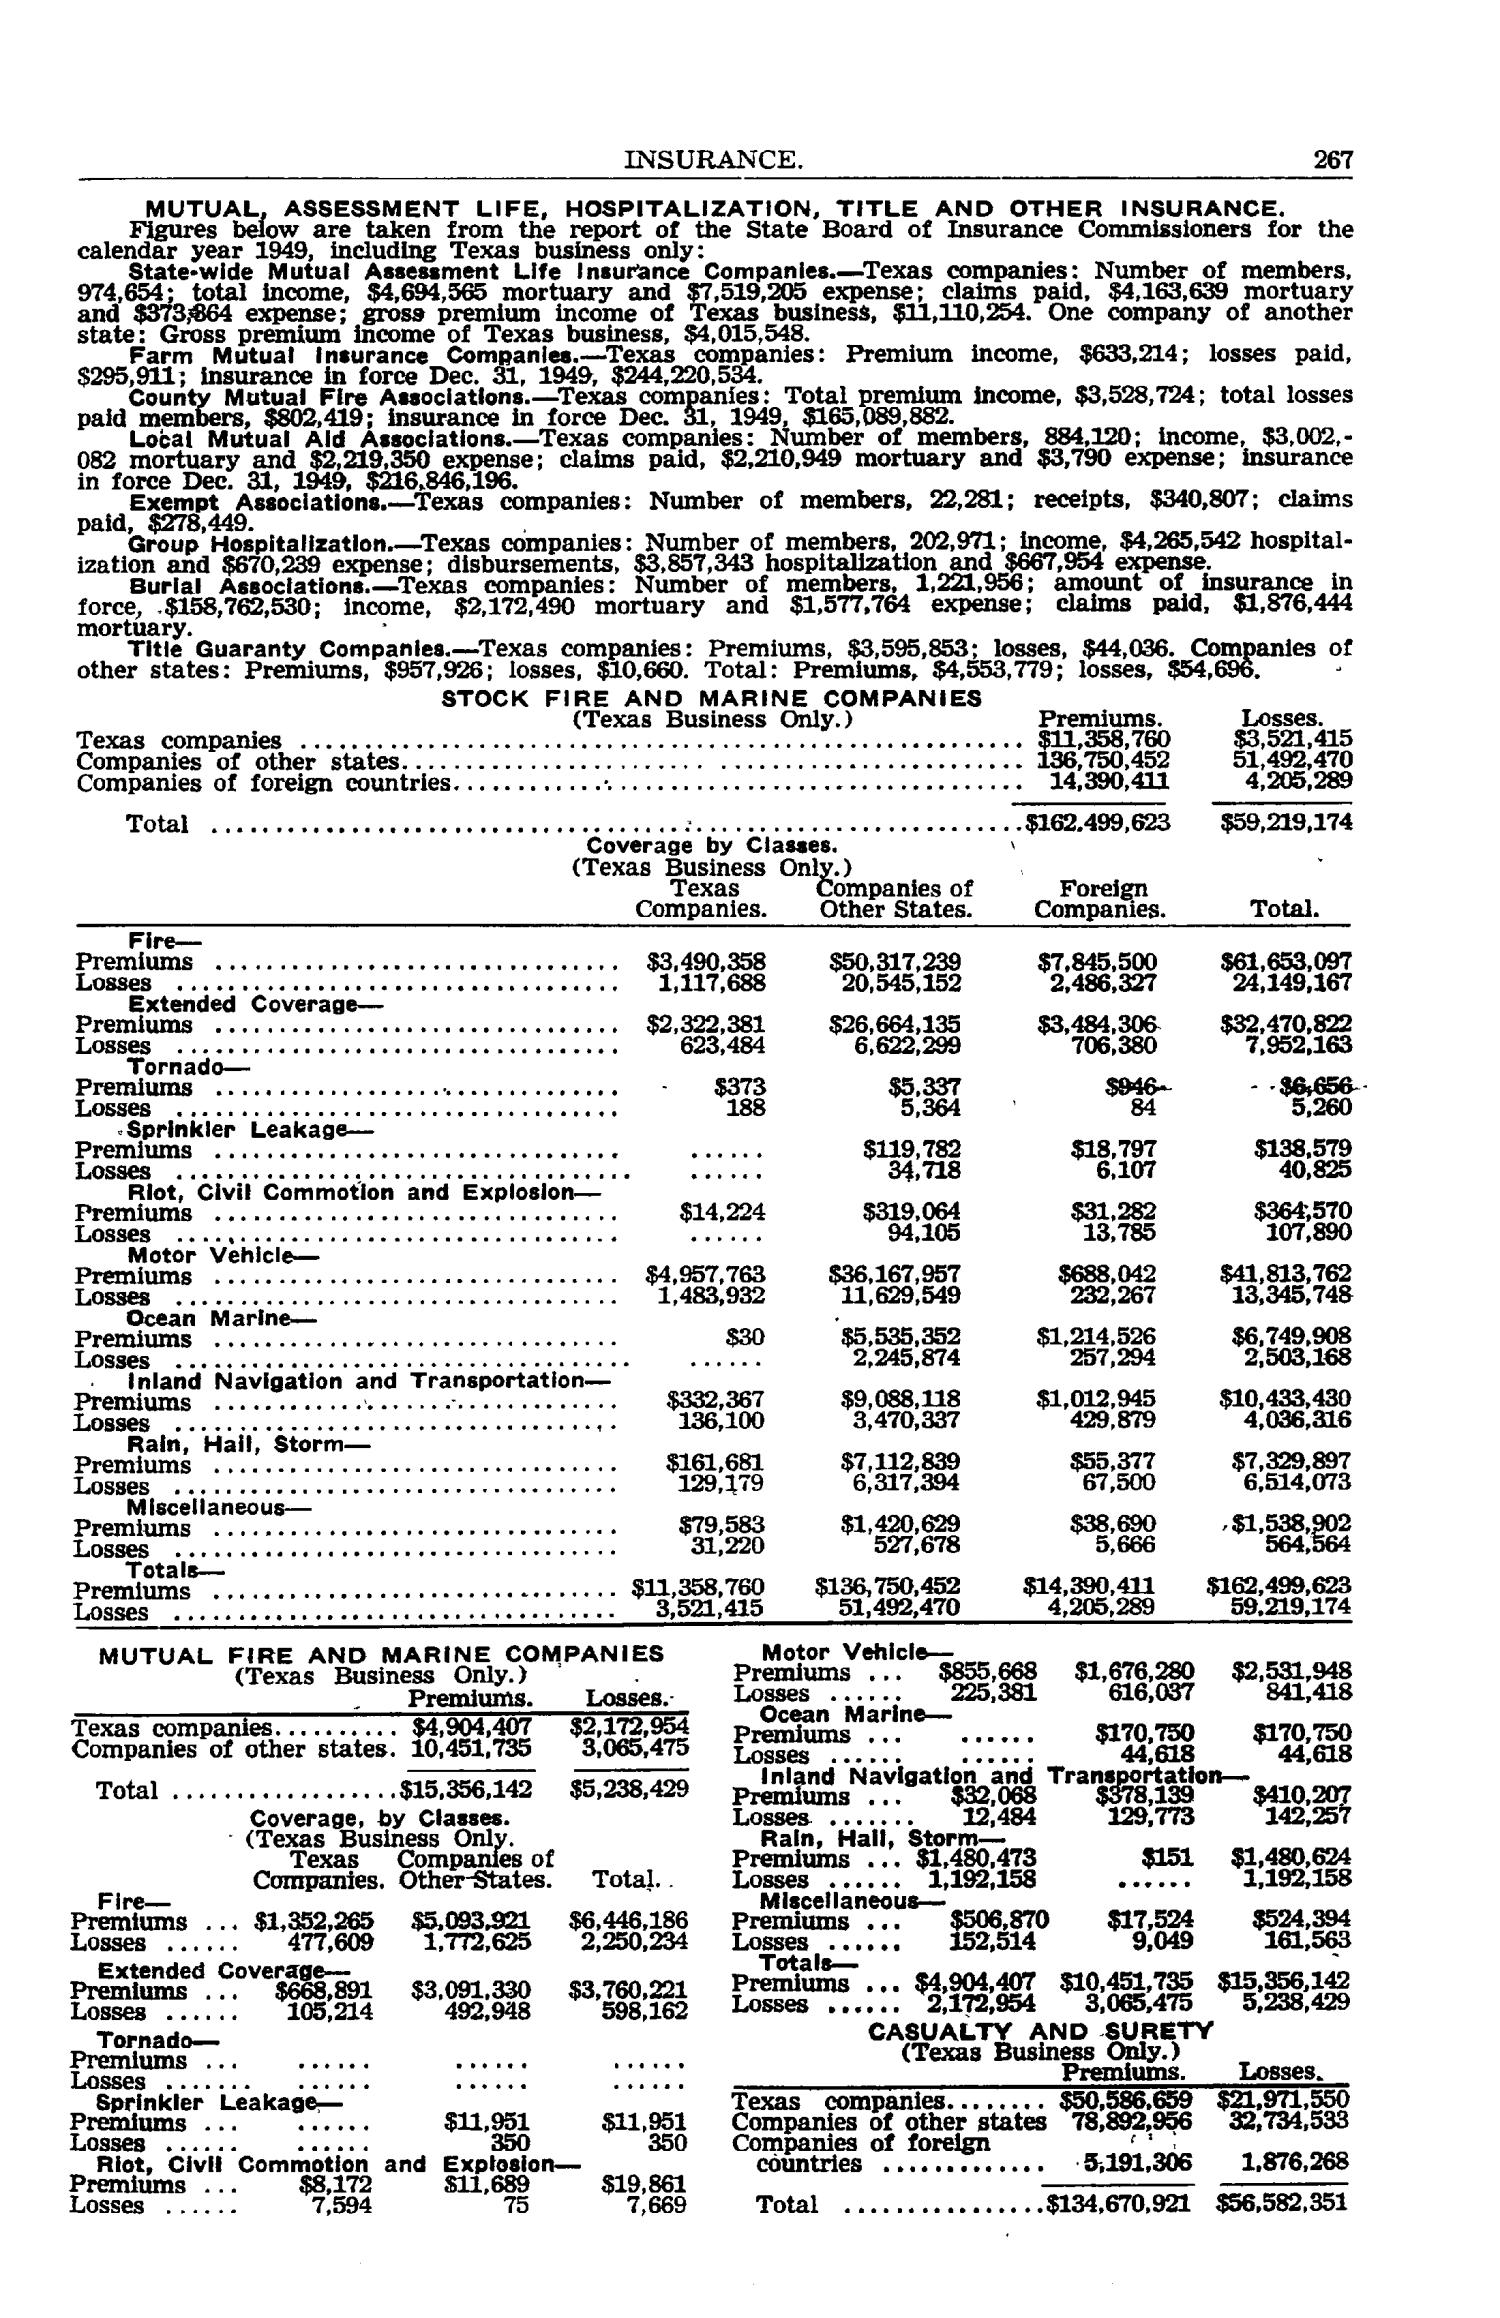 Texas Almanac, 1952-1953
                                                
                                                    267
                                                